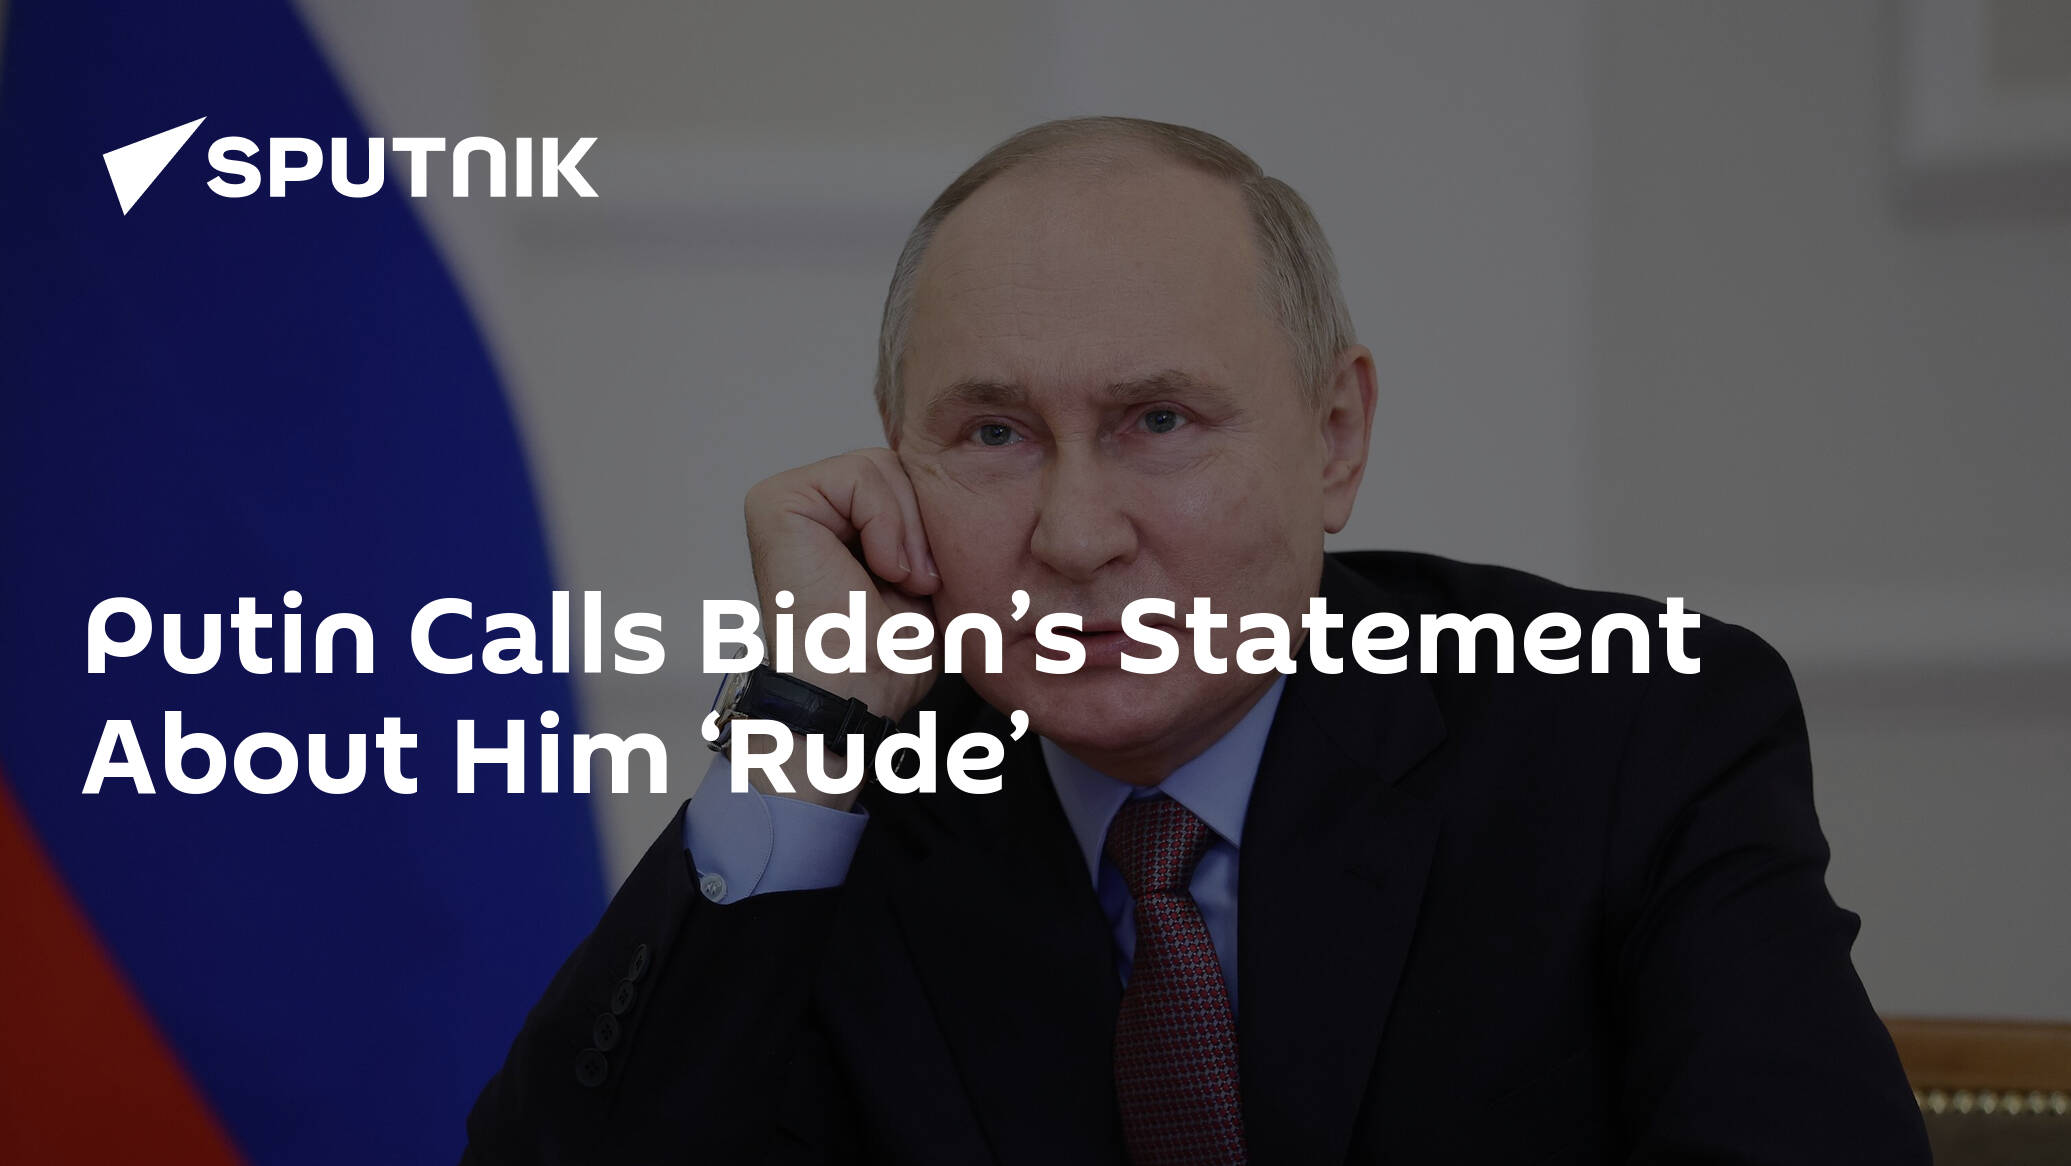 Putin Calls Biden’s Statement About Him ‘Rude’